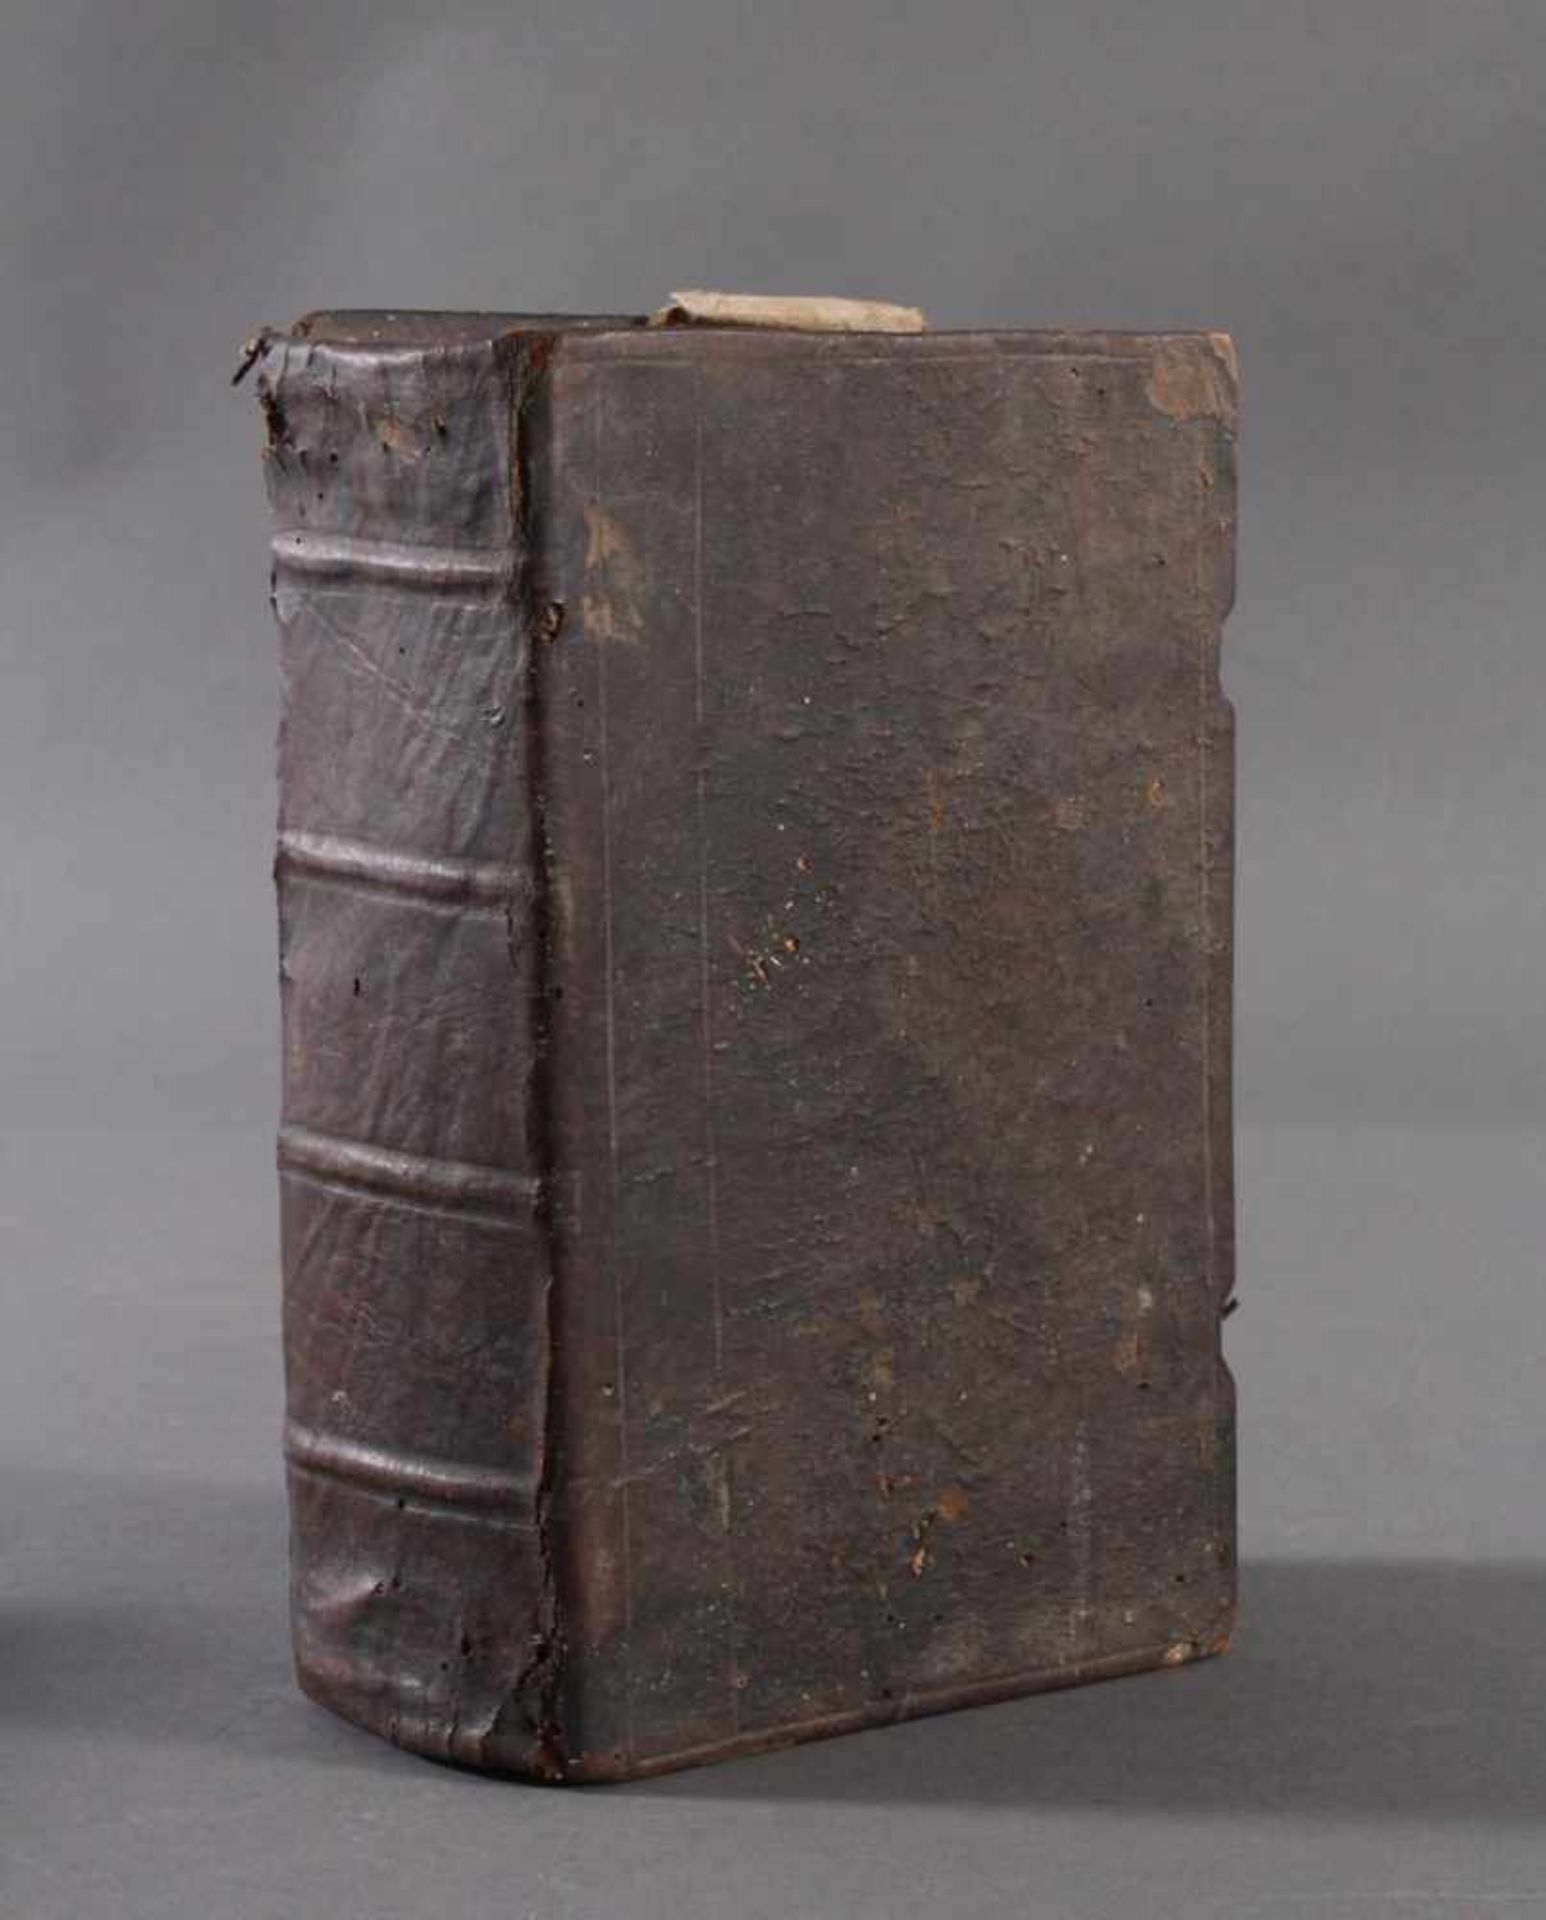 Tschechische Bibel von 1786. Písmo svaté Nového zákonaTschechische original Bibel von 1786 nach